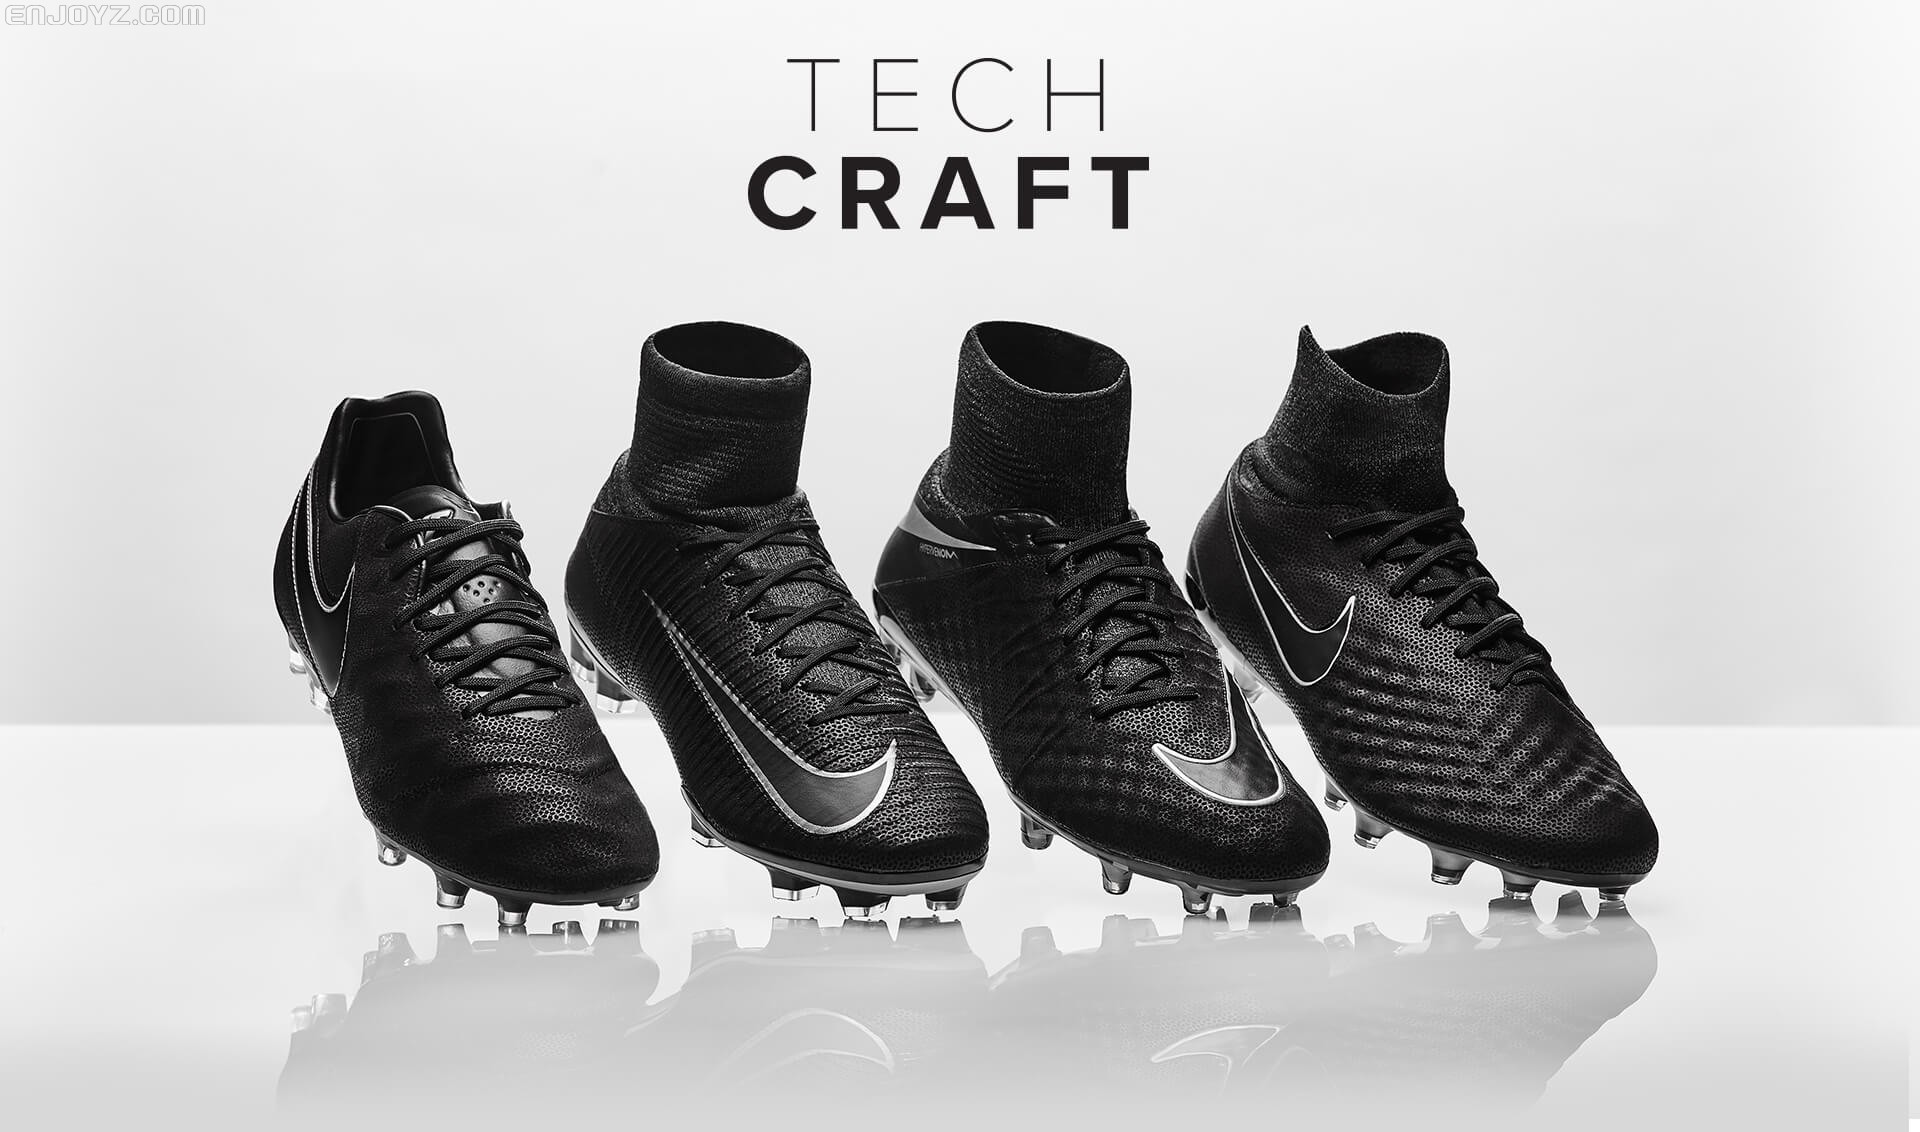 全新耐克科技匠心足球鞋套装发布